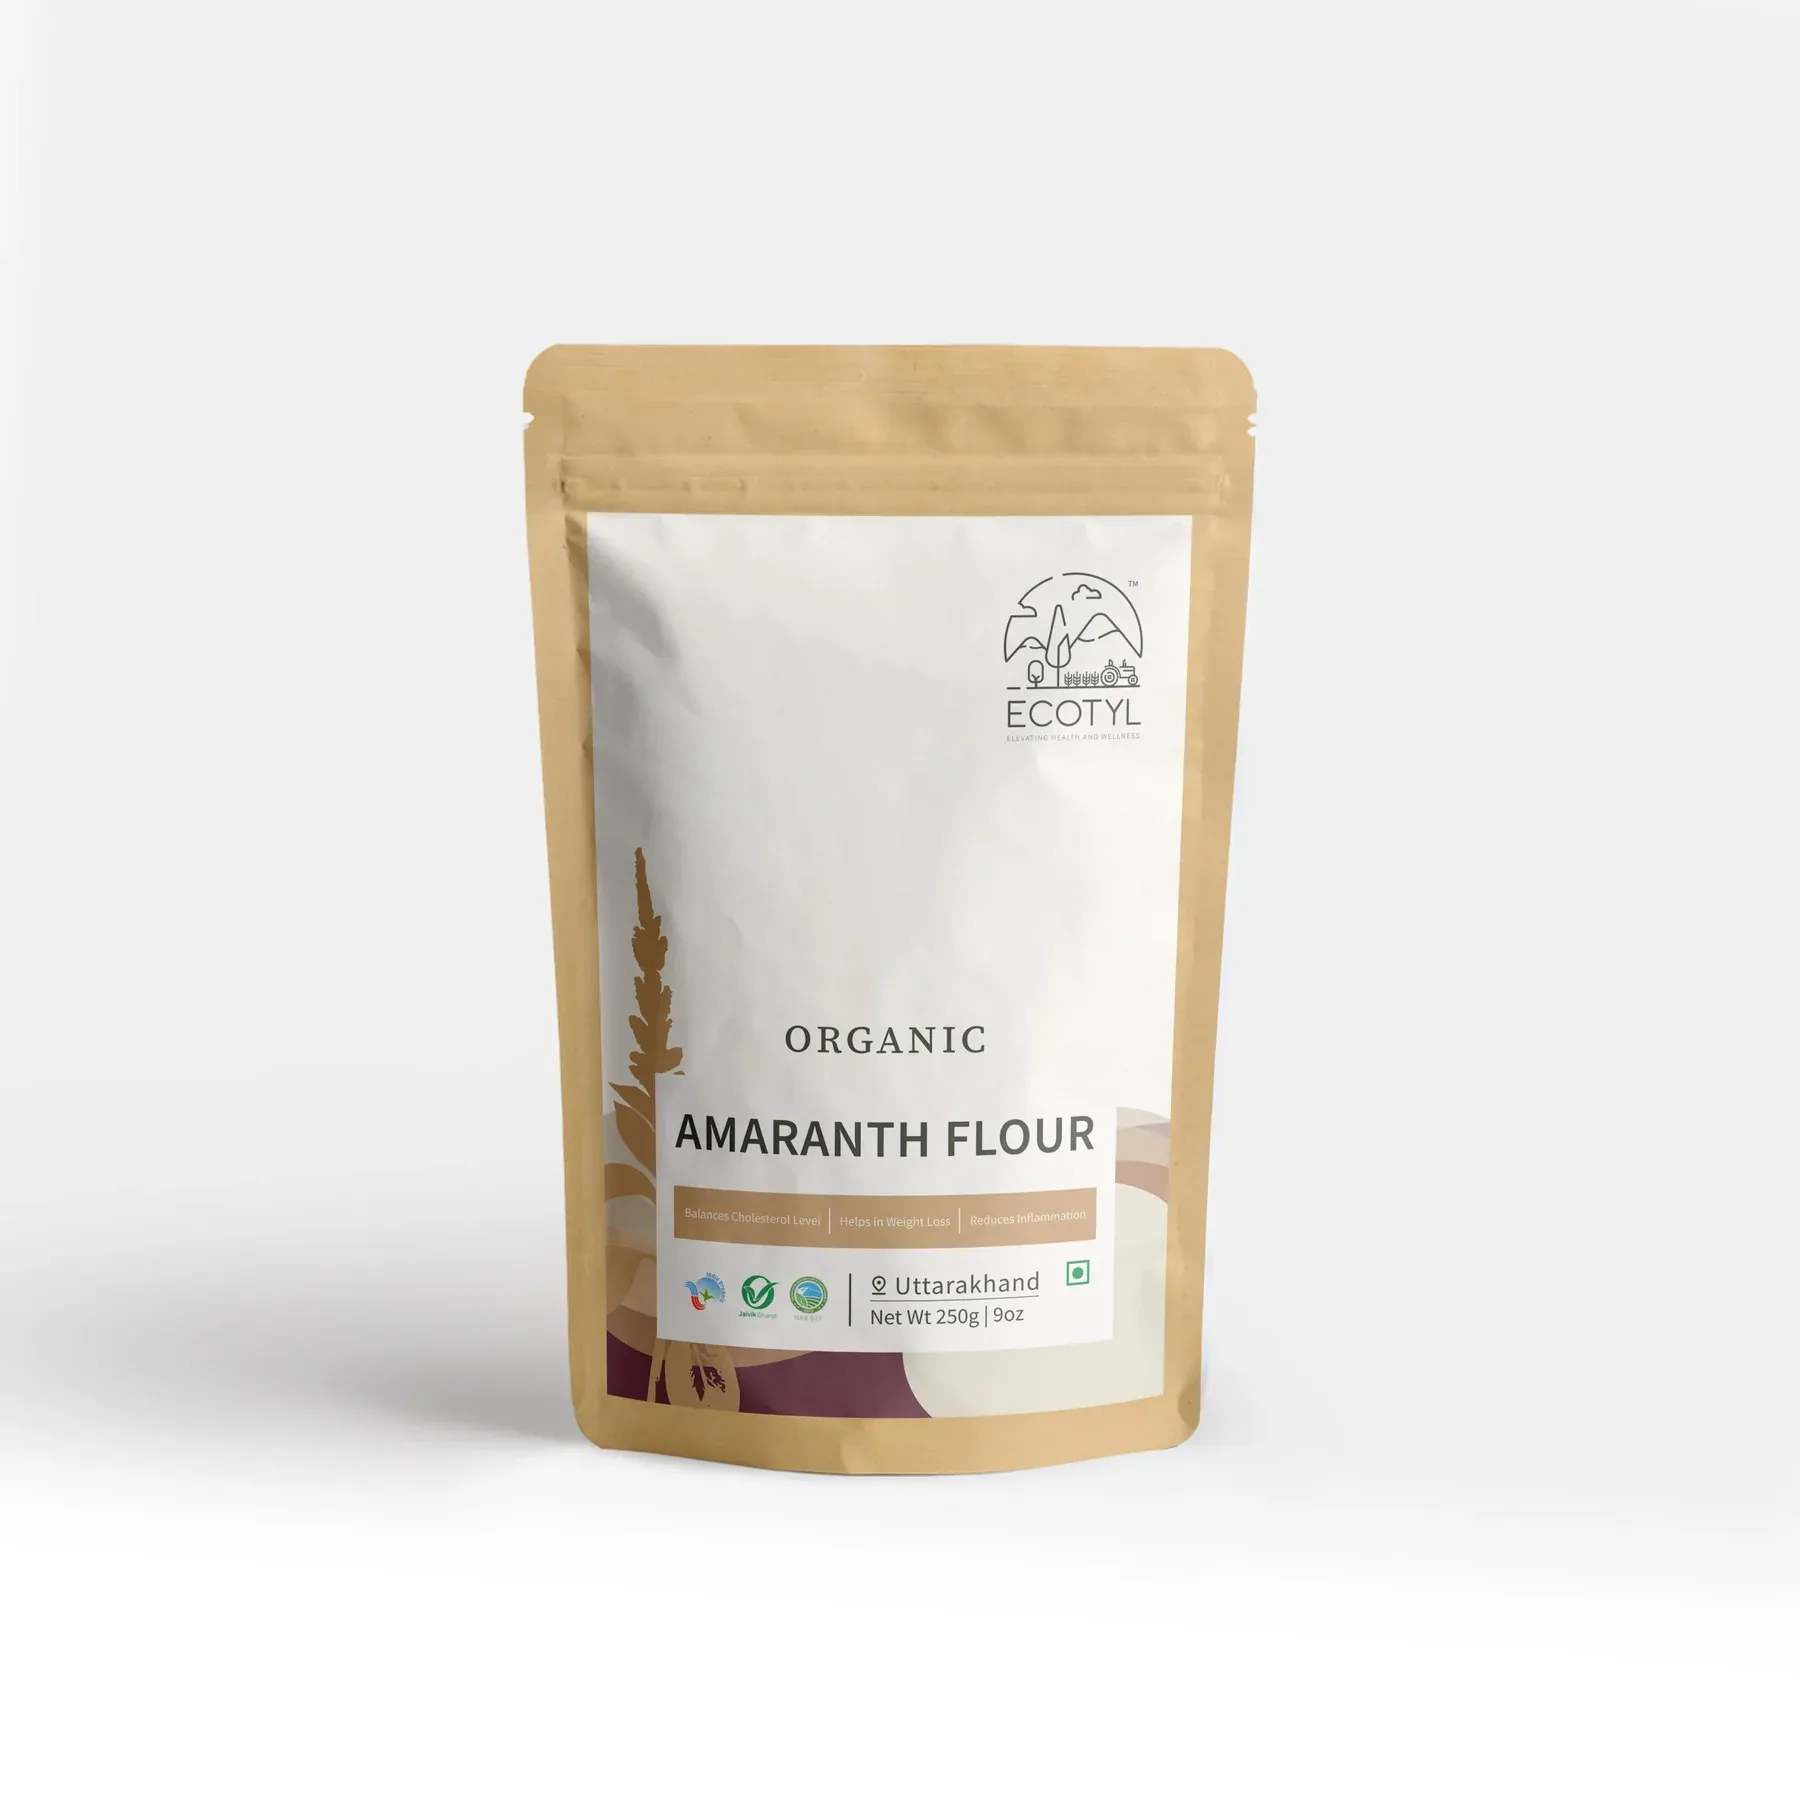 Ecotyl Organic Amaranth Flour Image